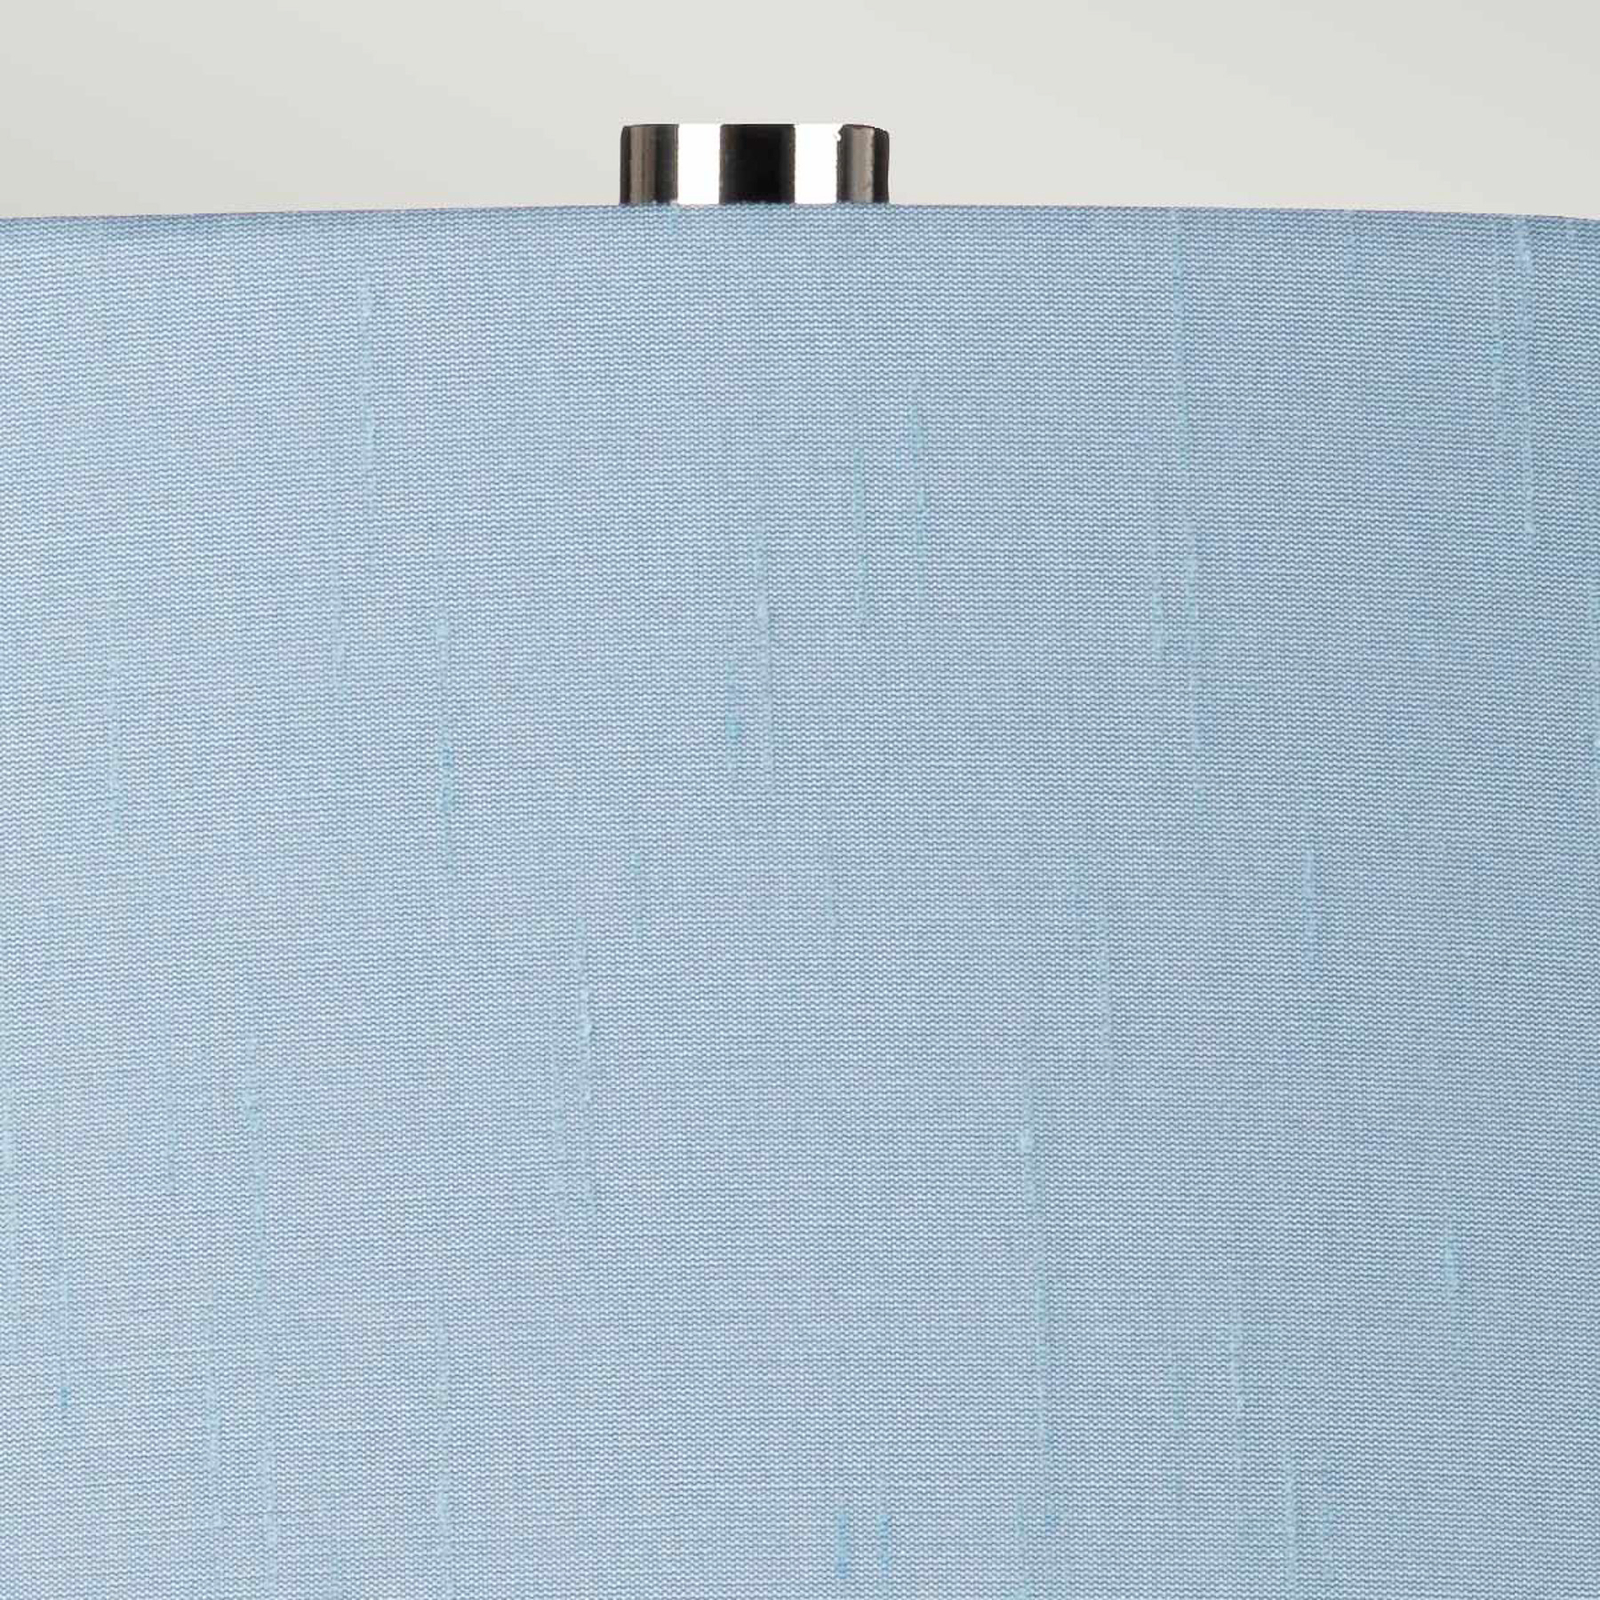 Tekstiili-pöytälamppu Isla, kiilt. nikkeli/sininen